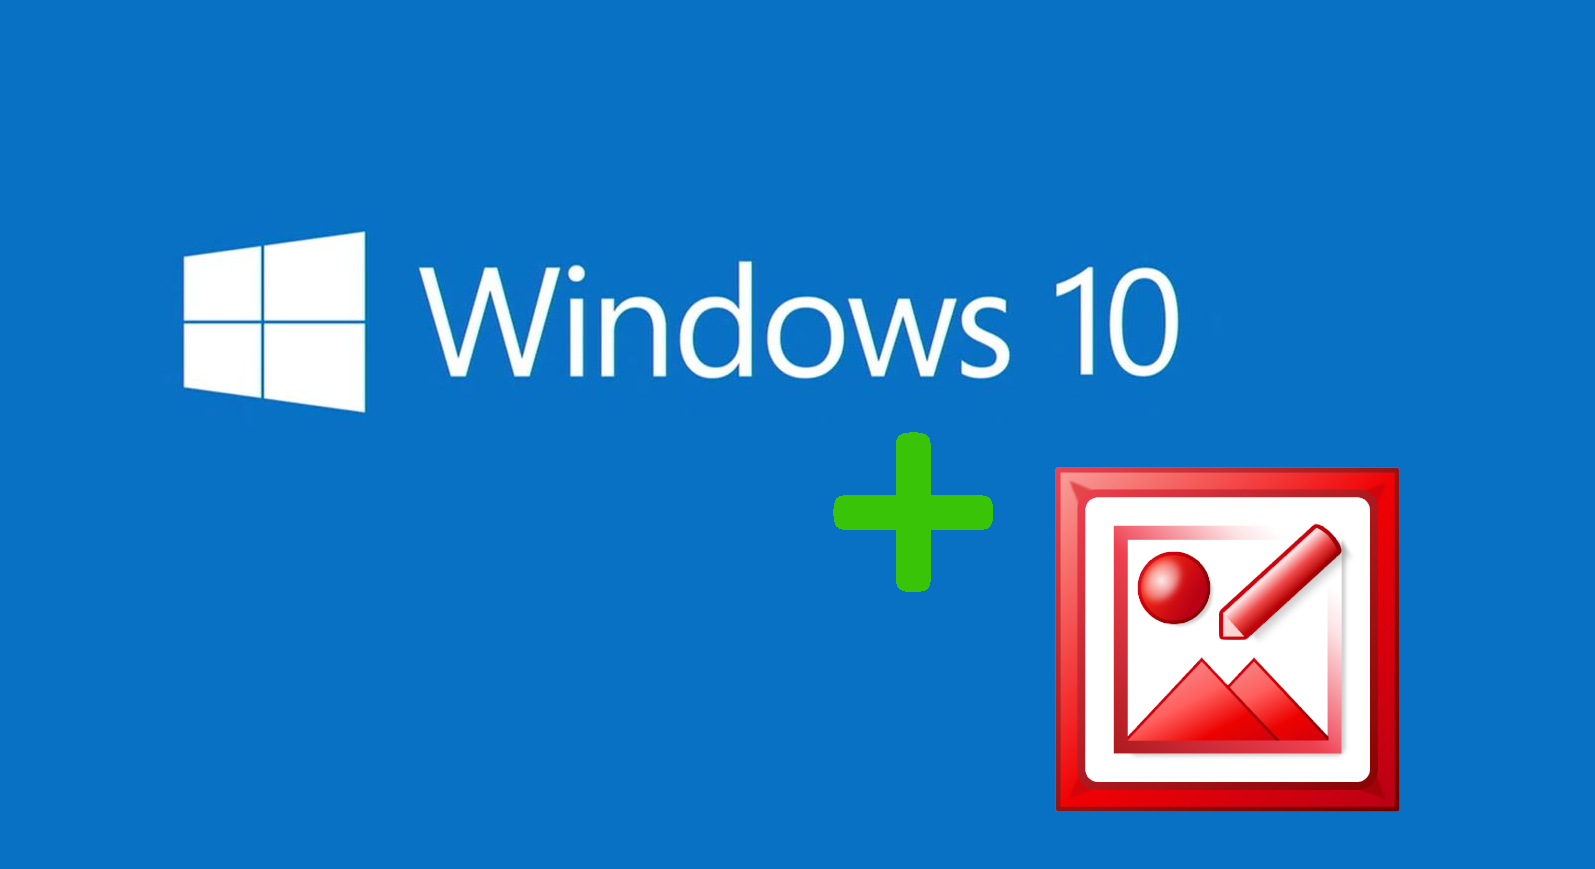 En este momento estás viendo Descargar Microsoft Office Picture Manager gratis para Windows 10 con cualquier versión de Office legal